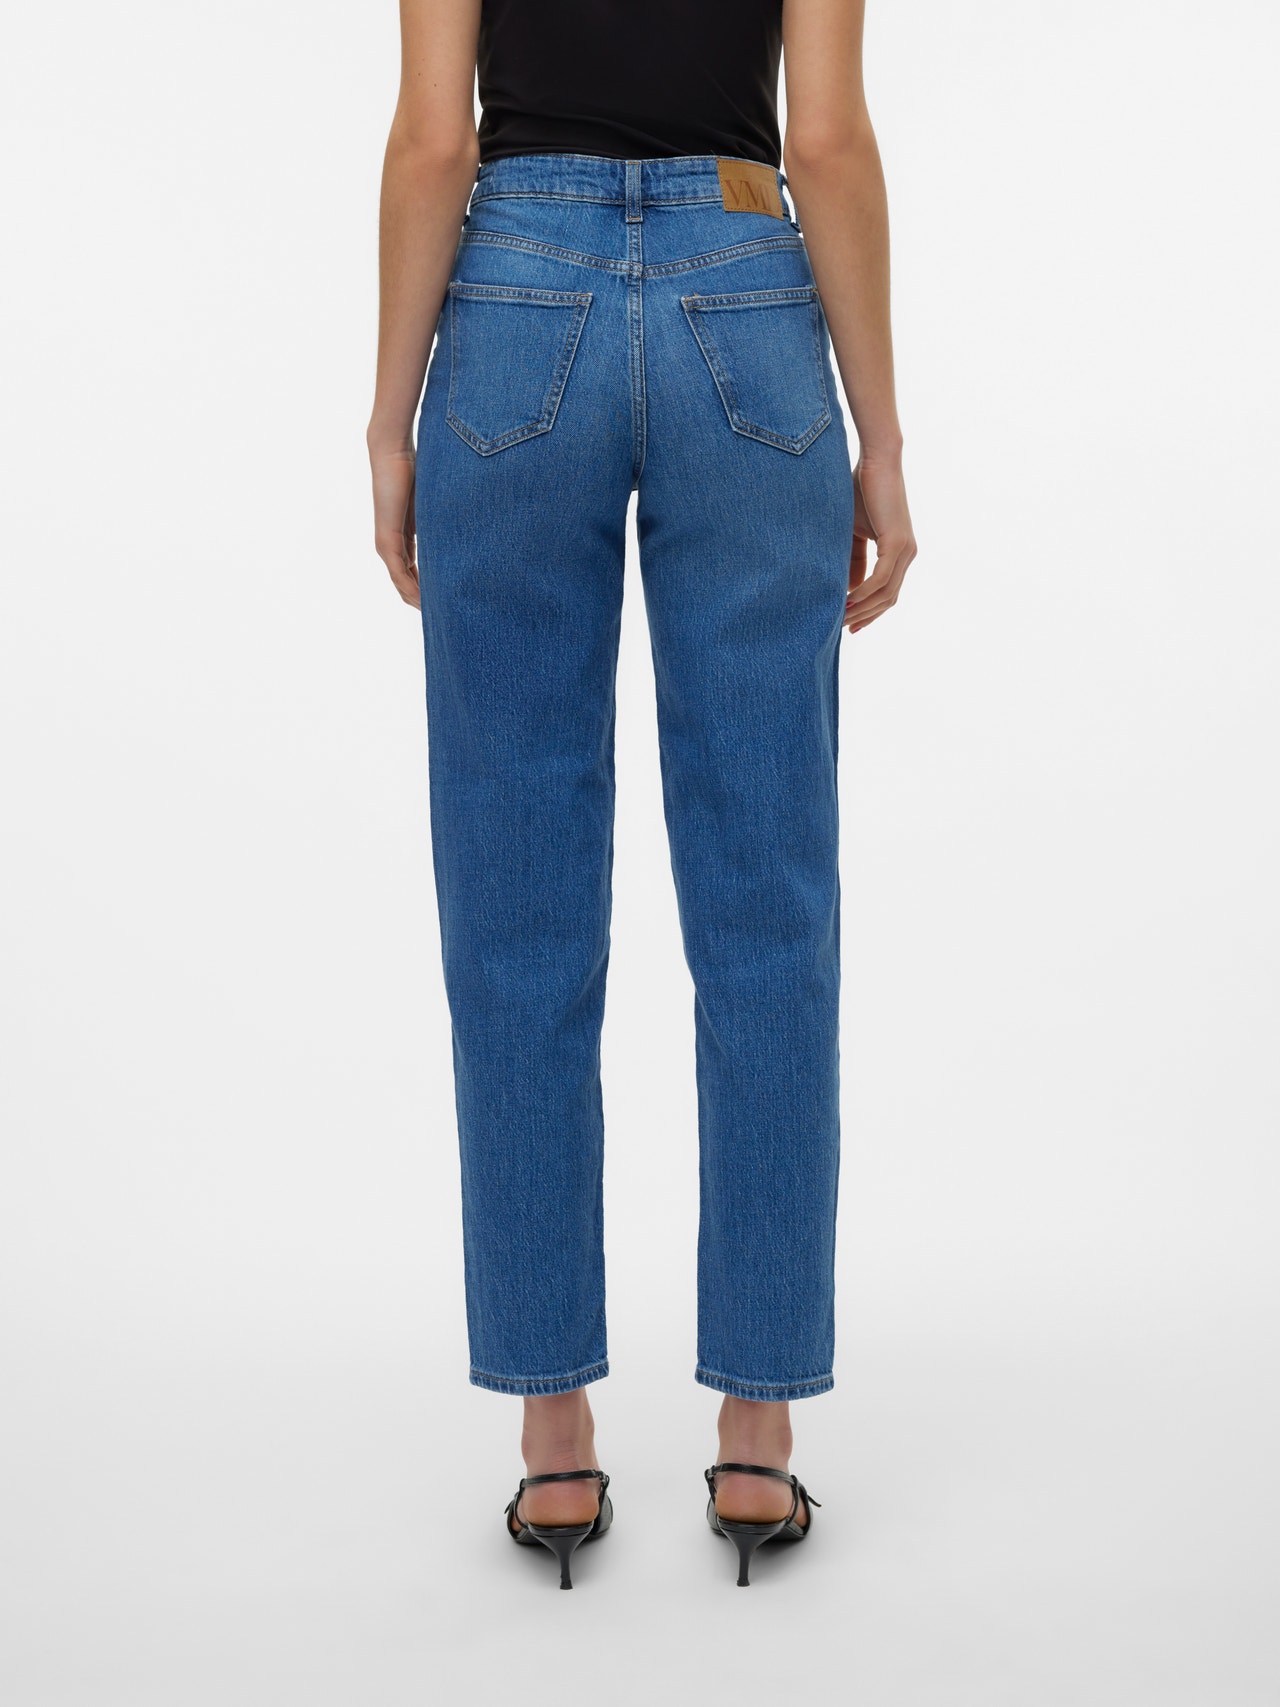 Vero Moda VMTESSA Mom Fit Jeans -Medium Blue Denim - 10297655